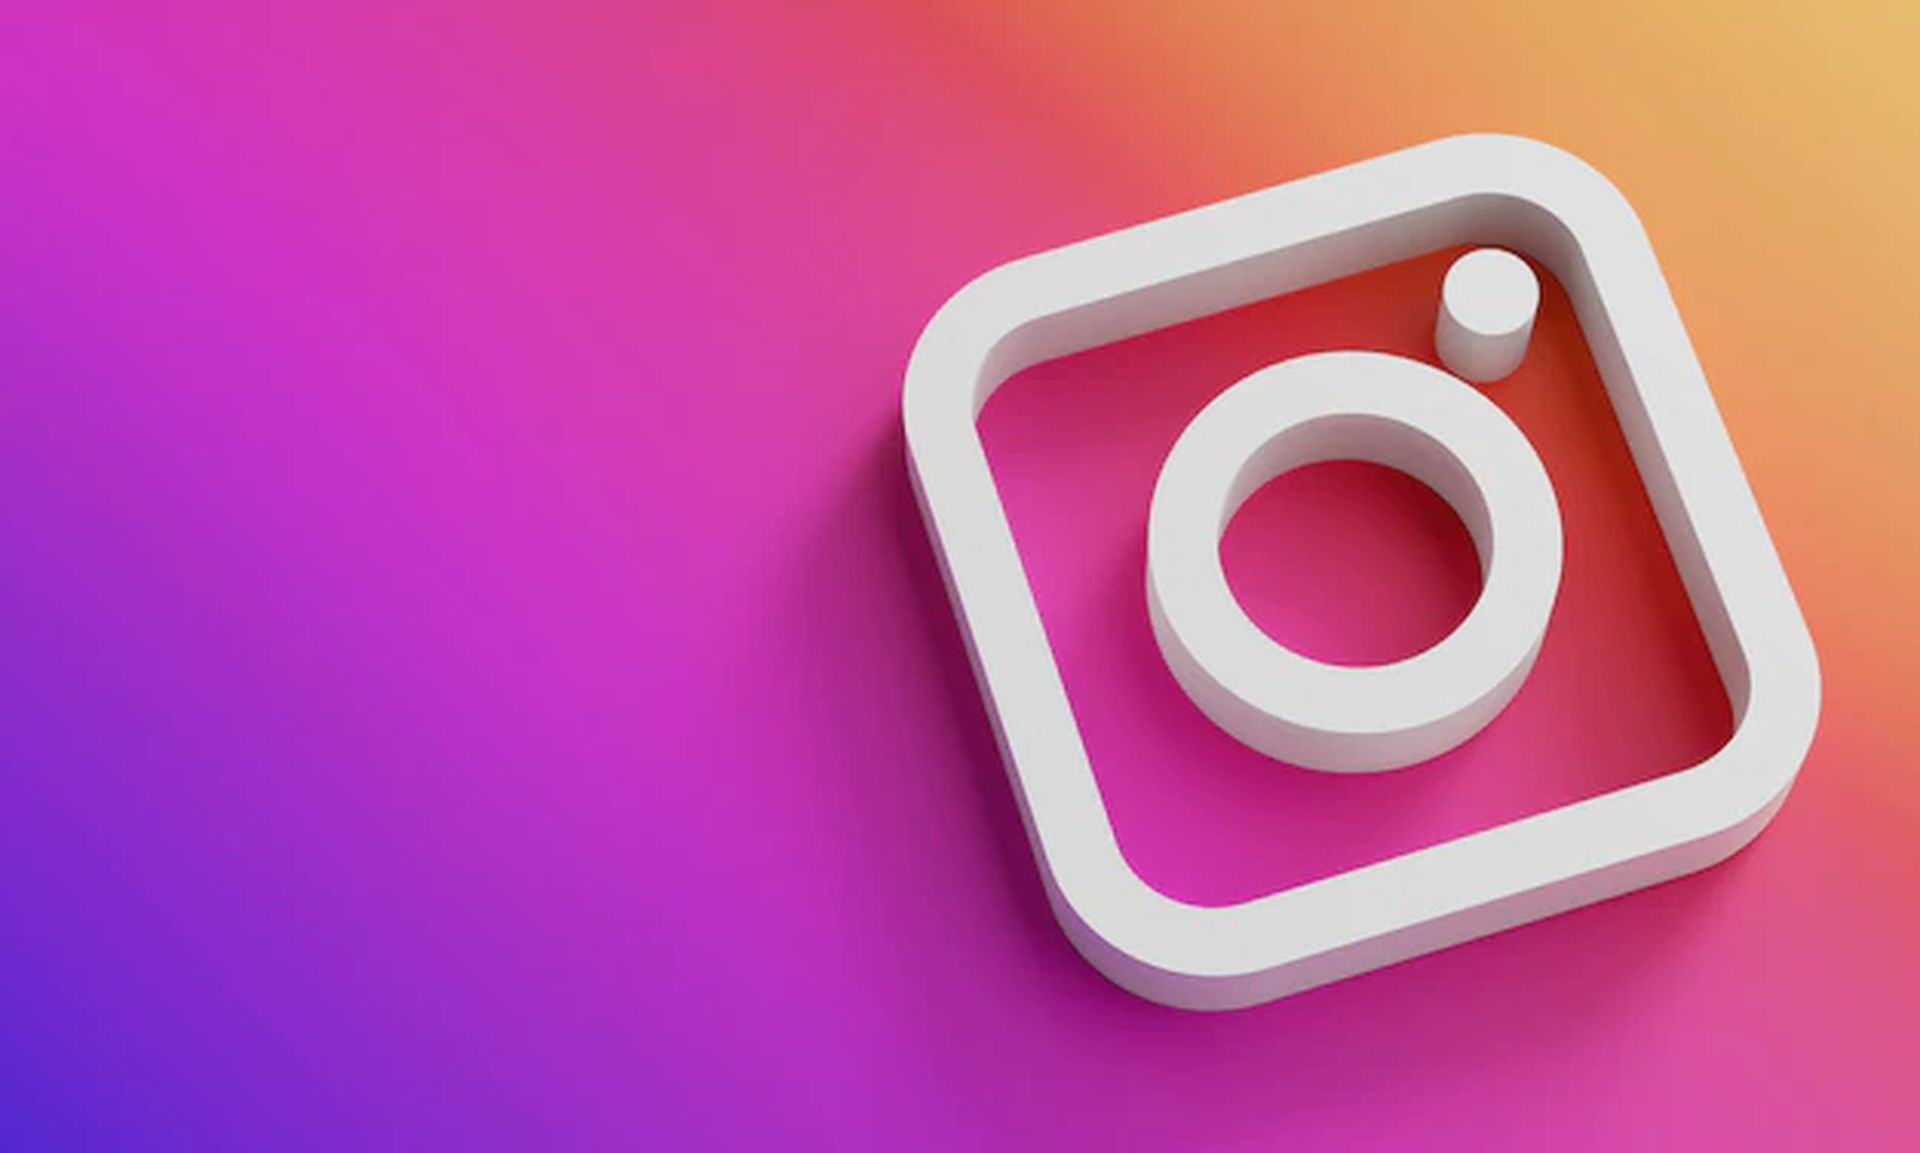 Dans cet article, nous allons voir comment publier des GIF sur Instagram, afin que vous puissiez partager vos GIF préférés avec vos abonnés.